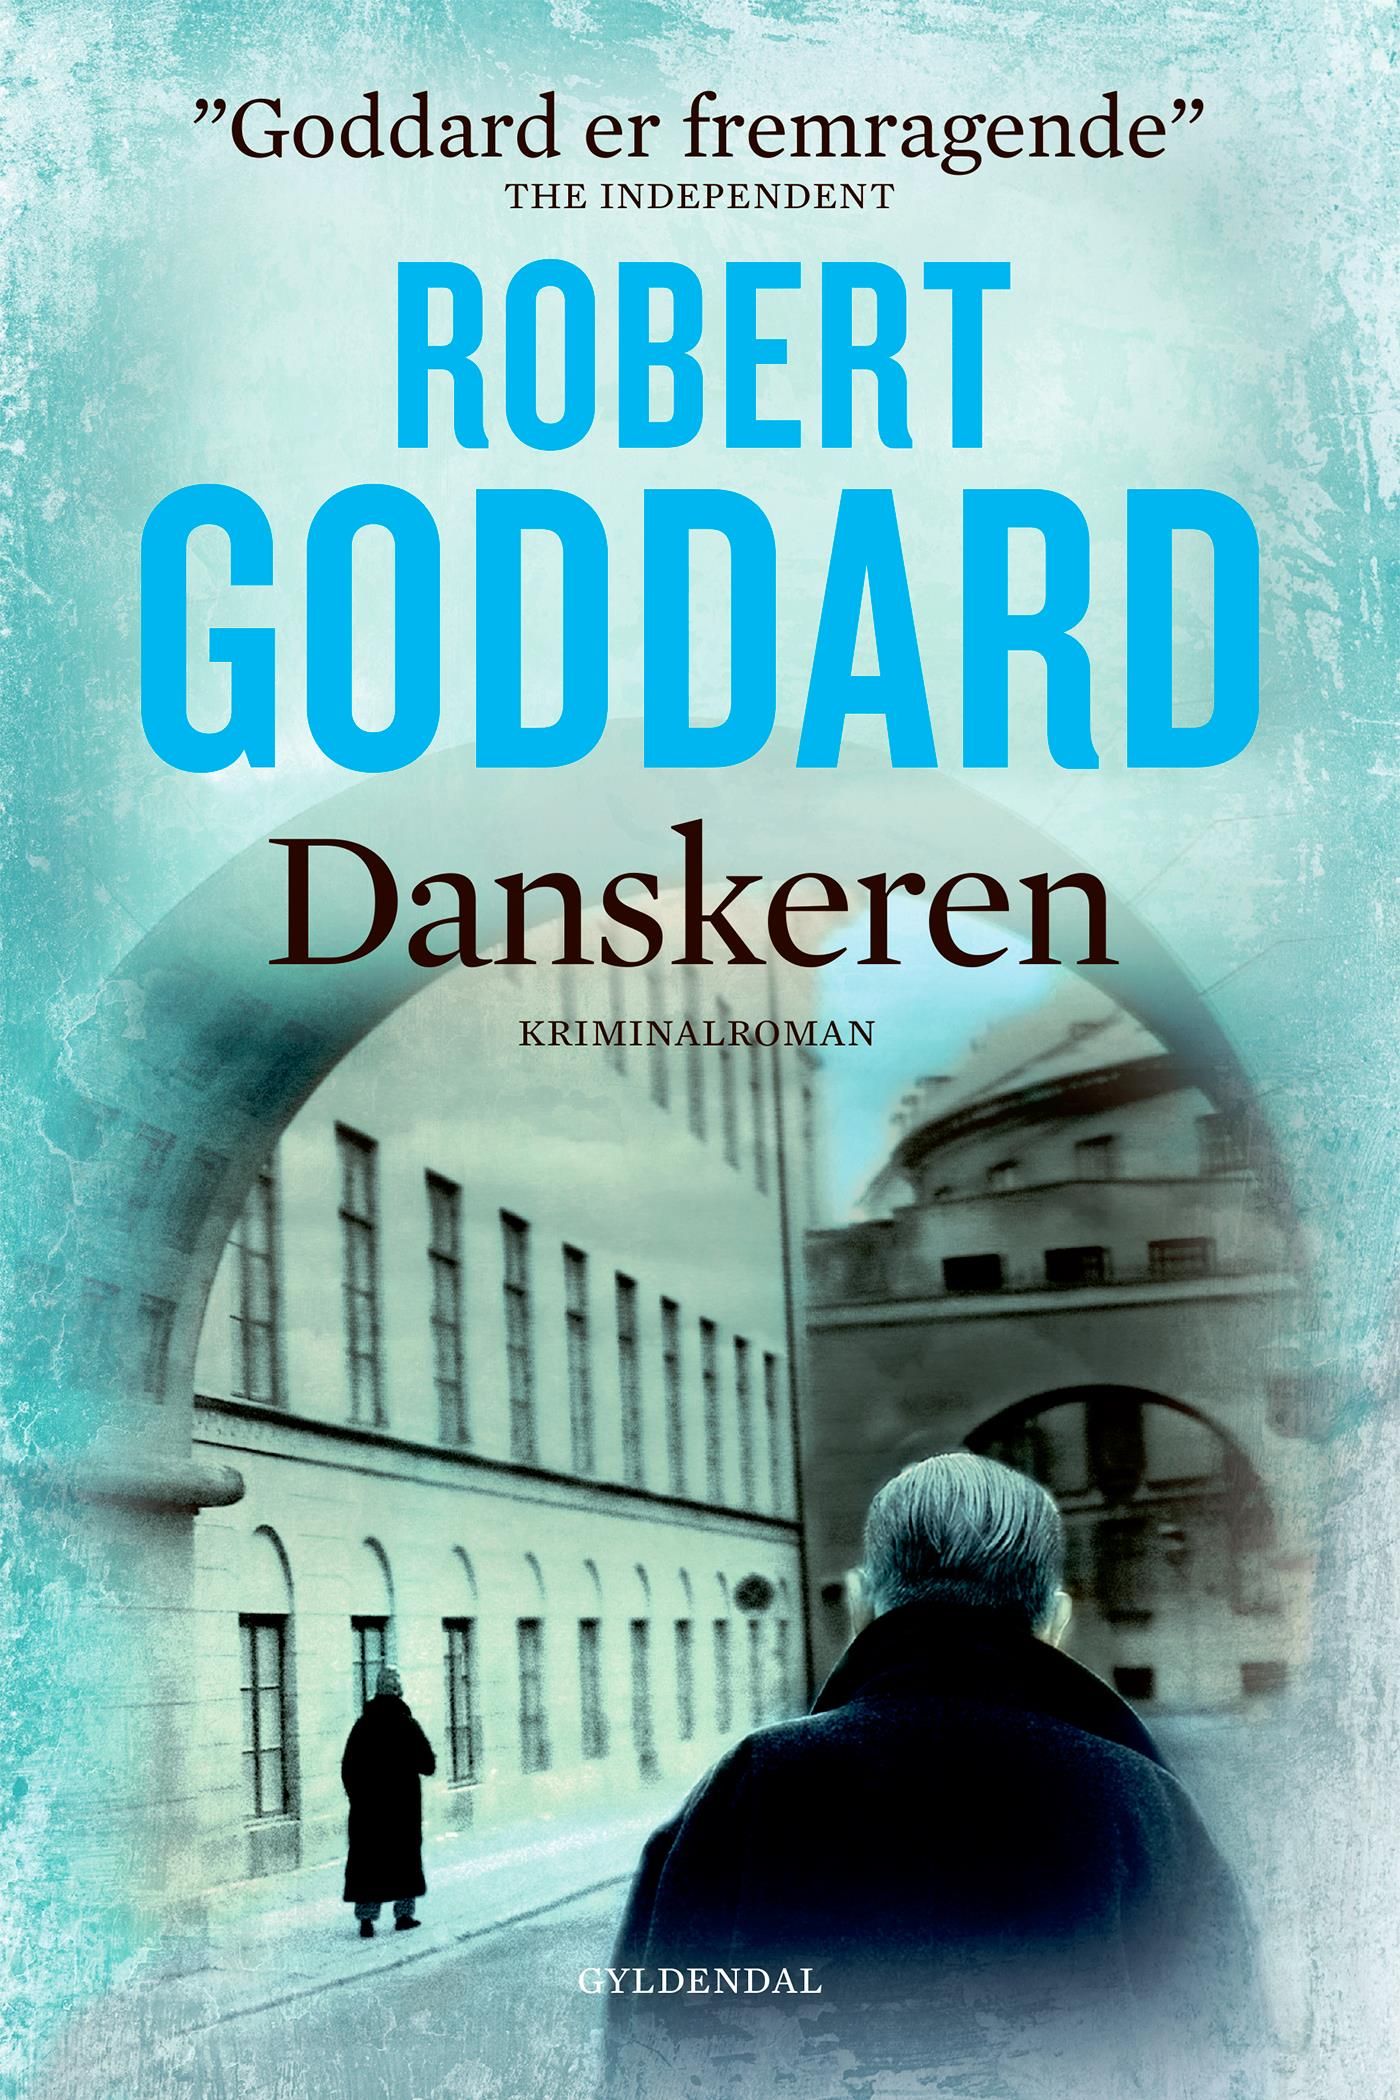 Danskeren, e-bog af Robert Goddard